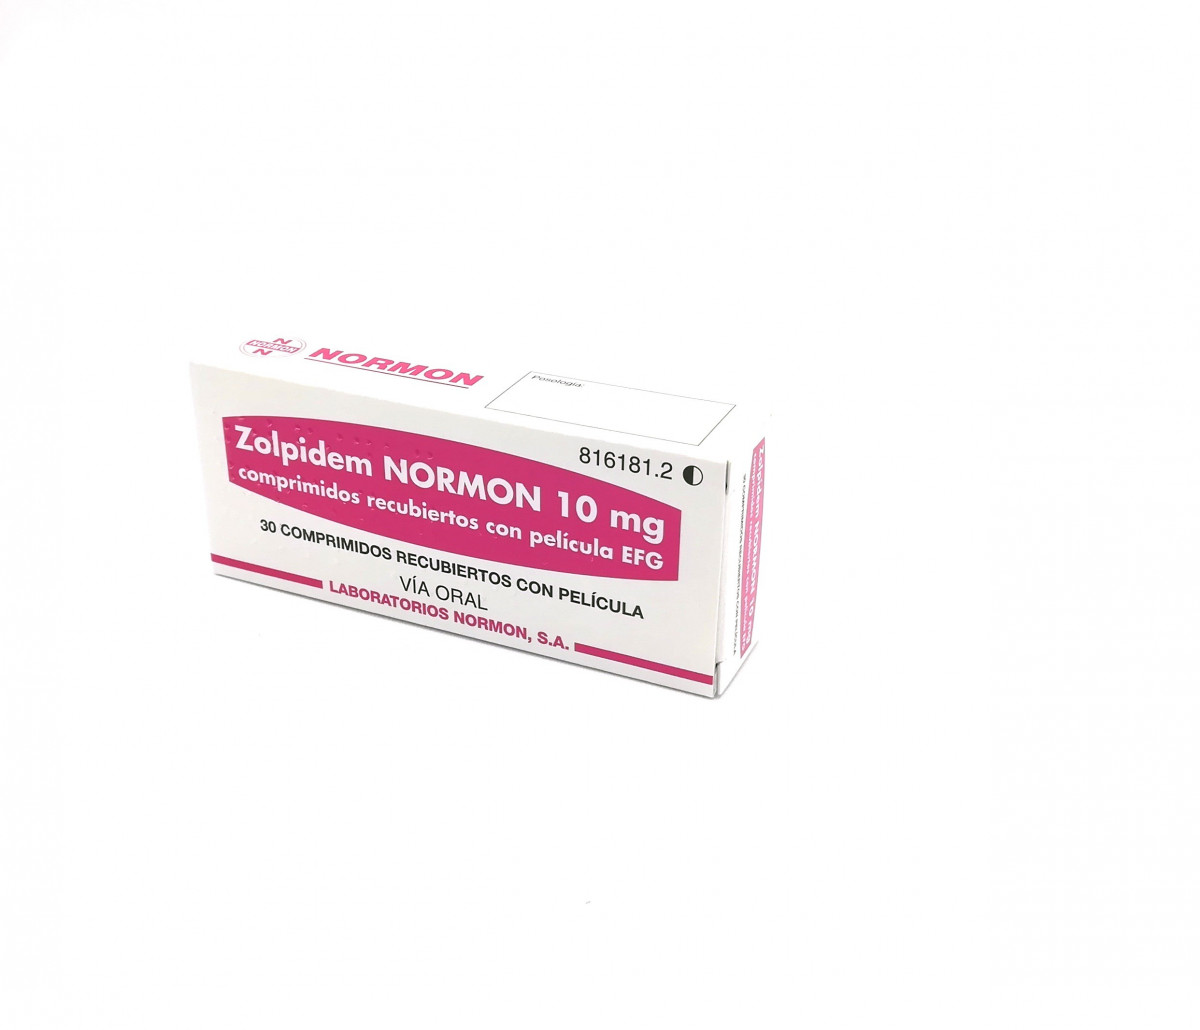 ZOLPIDEM NORMON 10 mg COMPRIMIDOS RECUBIERTOS CON PELICULA EFG, 28 comprimidos fotografía del envase.